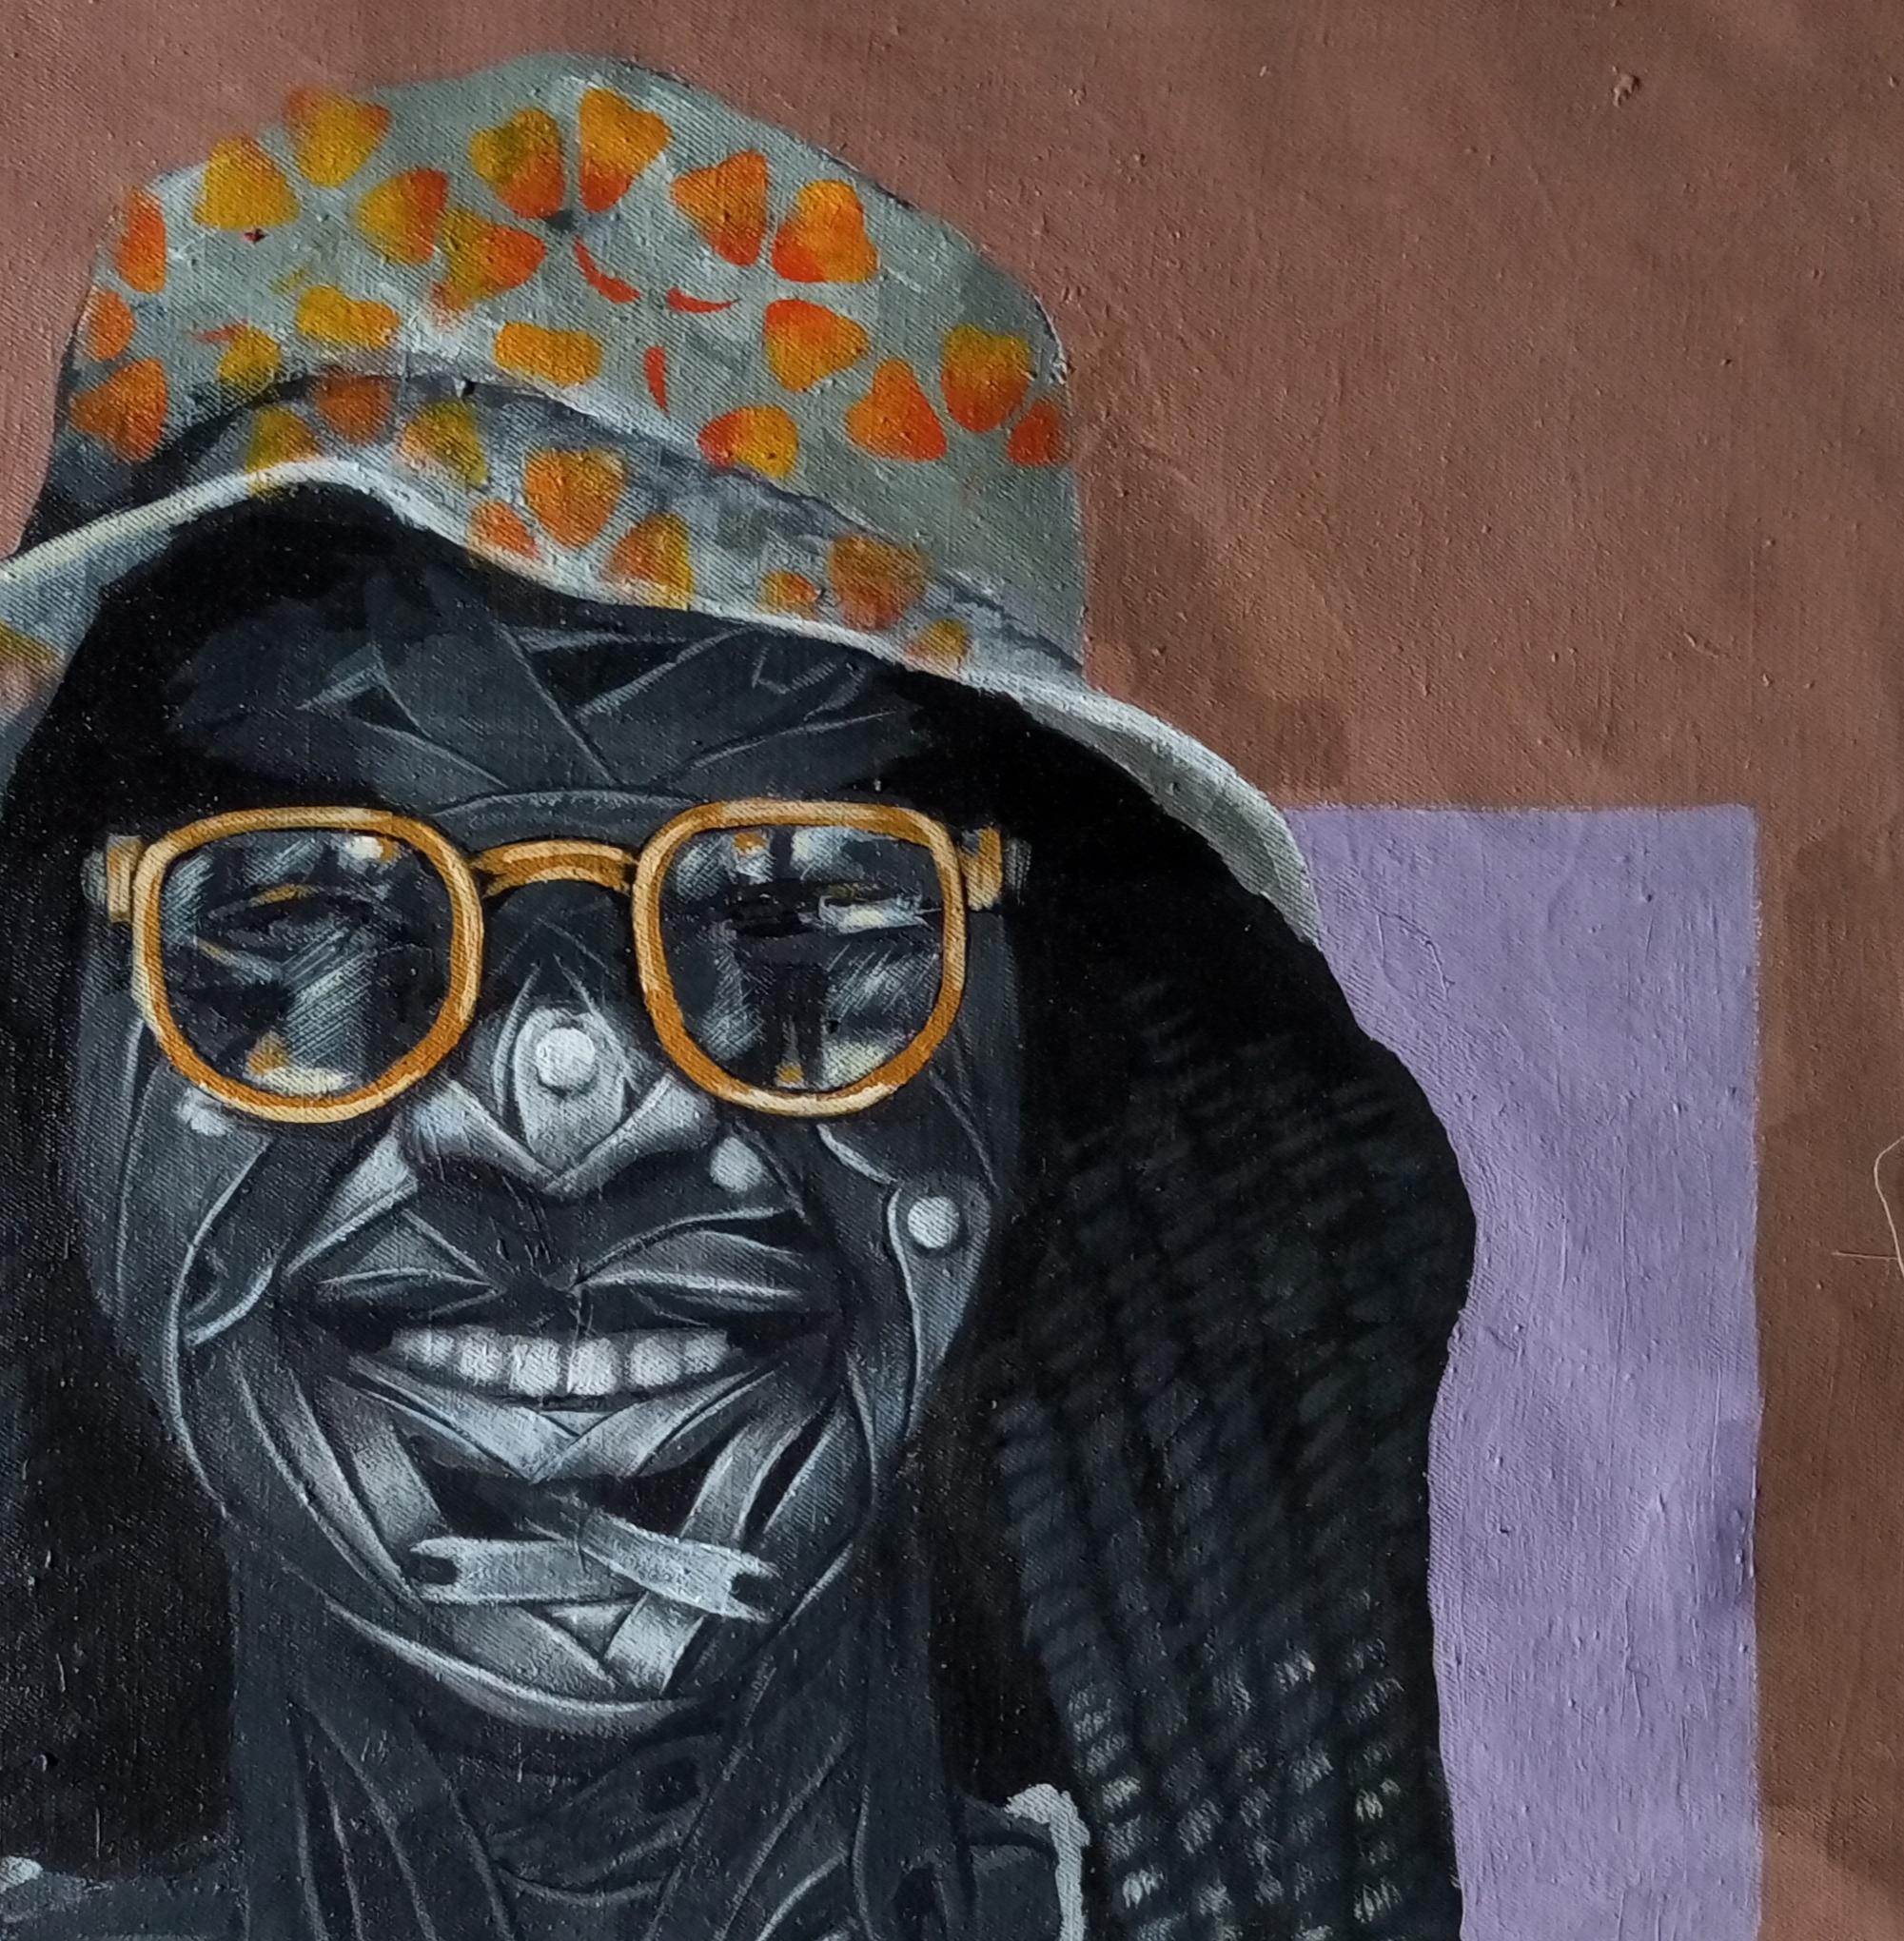 Olajumoke (enfant de richesse que tout le monde chérit) - Contemporain Painting par  Ayanwale Joseph Oluwafemi 